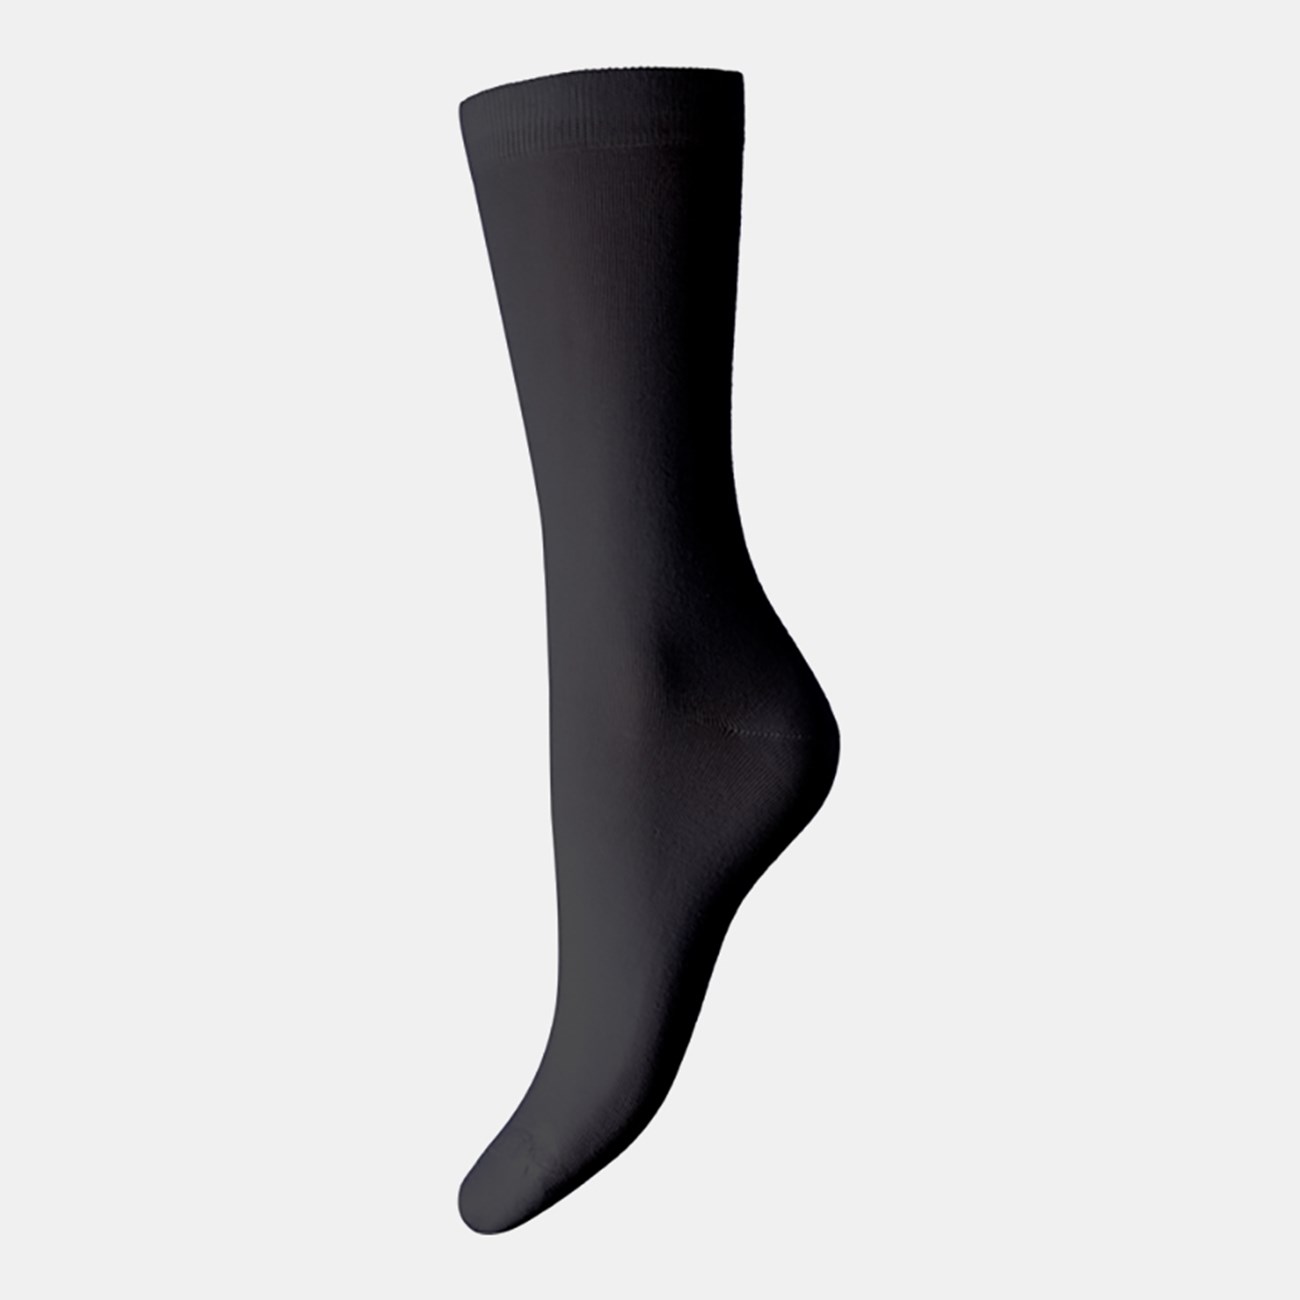  Γυναικείες Κάλτσες Bamboo  W331 - The Athlete's Foot